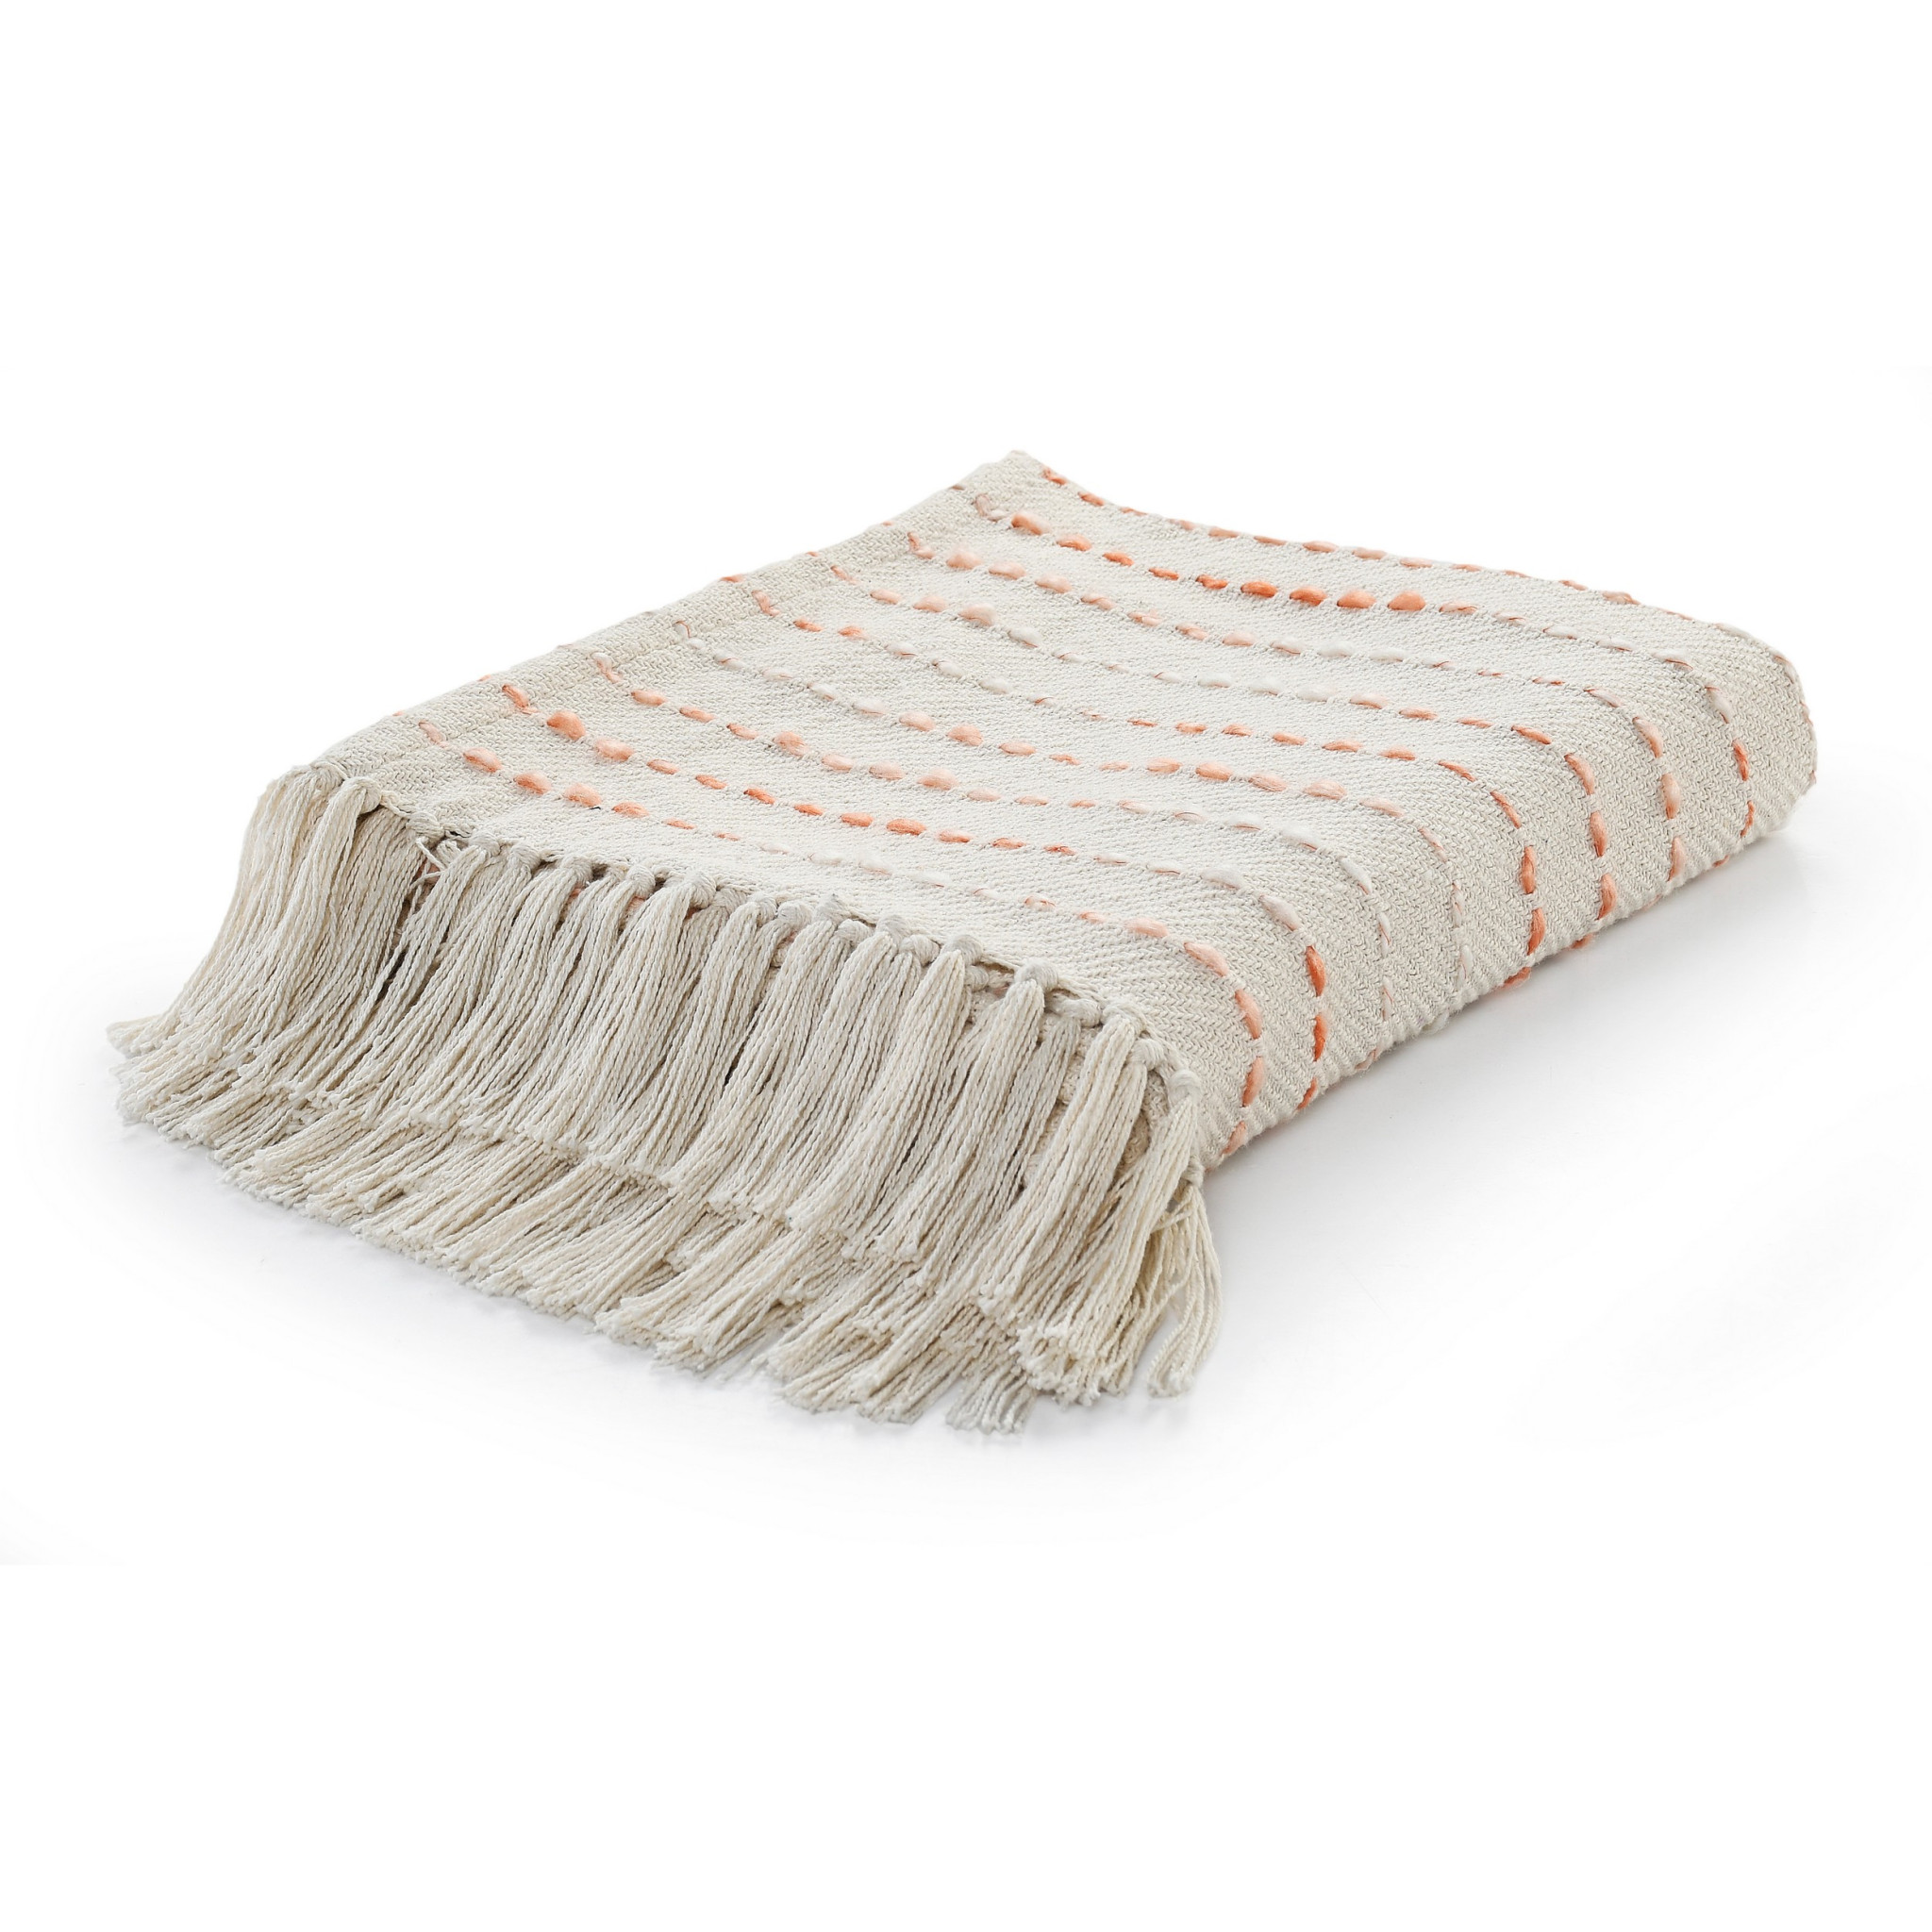 Cream Woven Cotton Striped Throw Blanket-516632-1